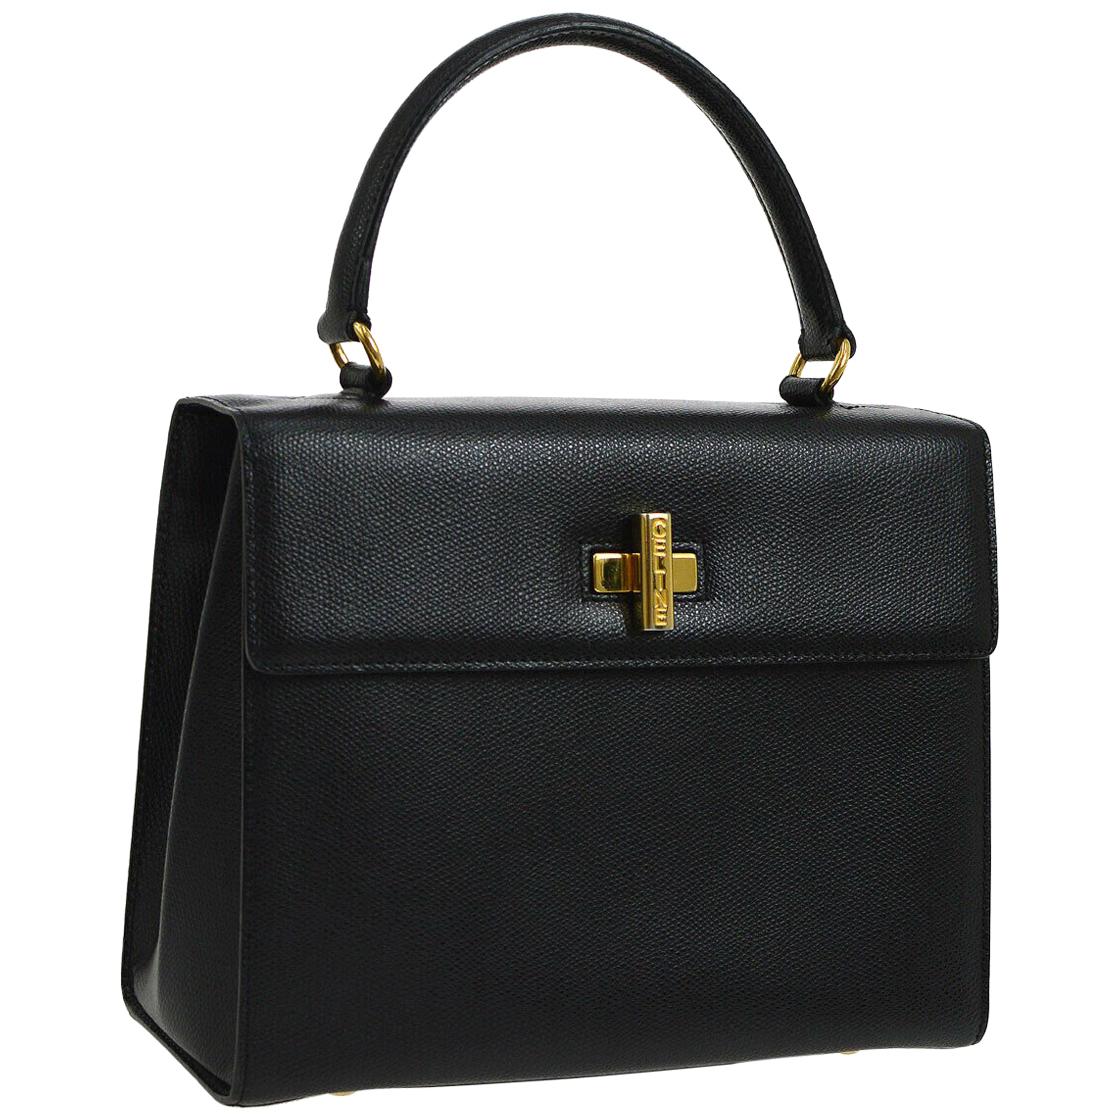 Celine Leather Gold Kelly Style Evening Top Handle Satchel Shoulder Flap Bag